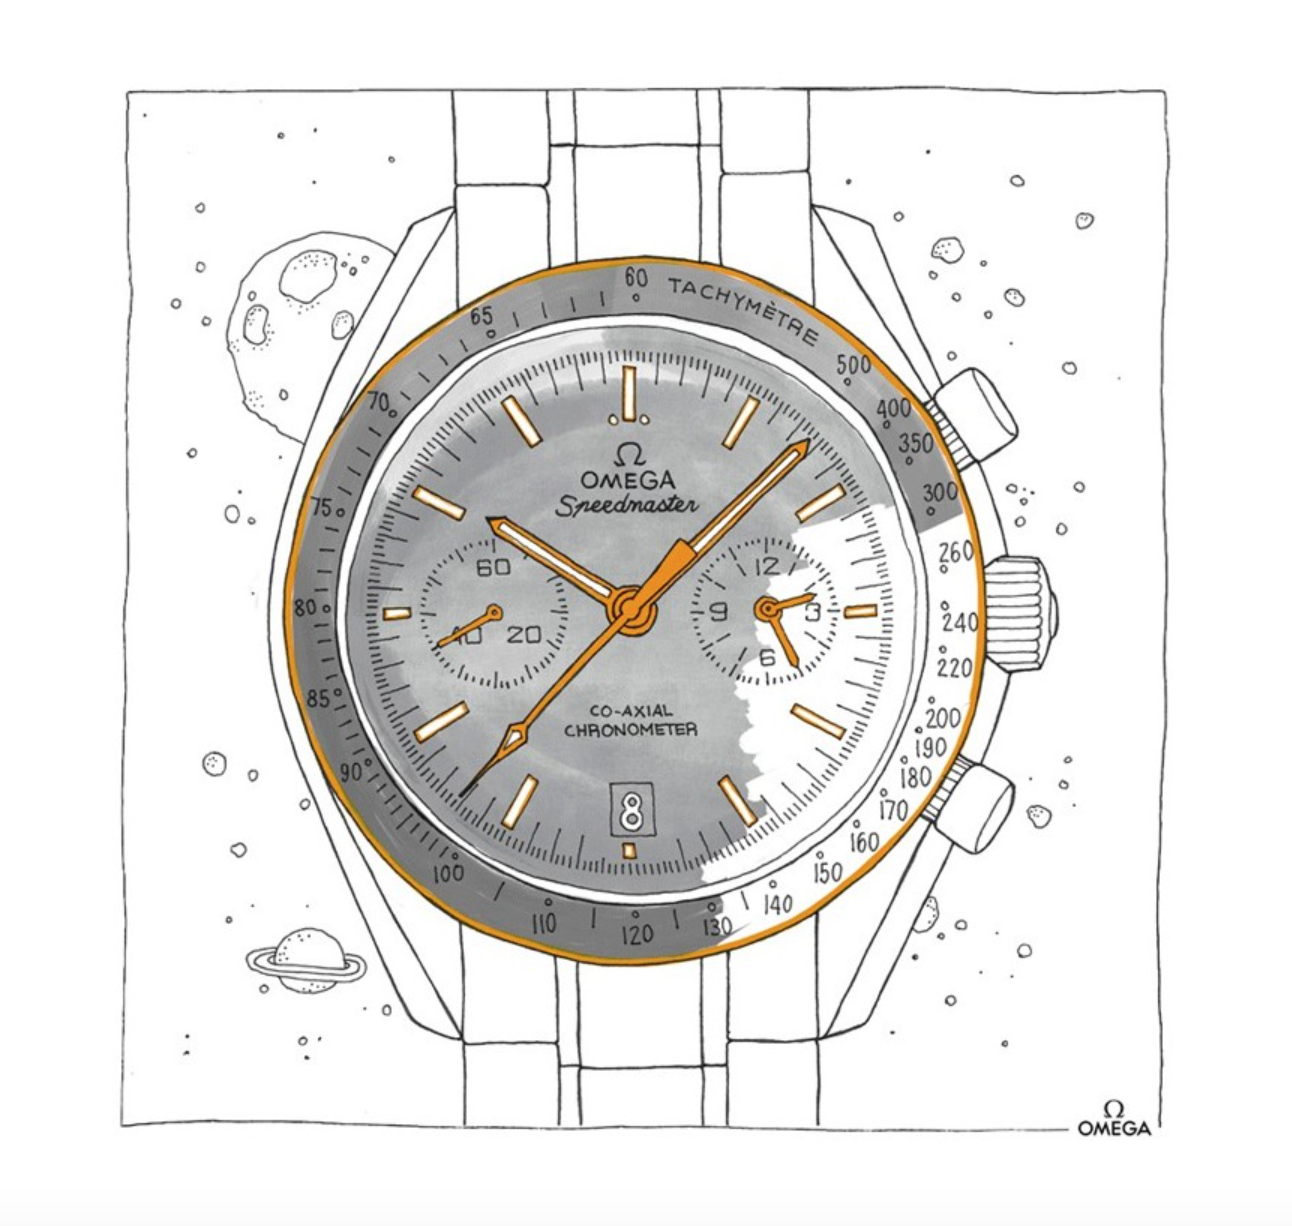 Omega выпустили раскраску с иллюстрациями классических моделей часов